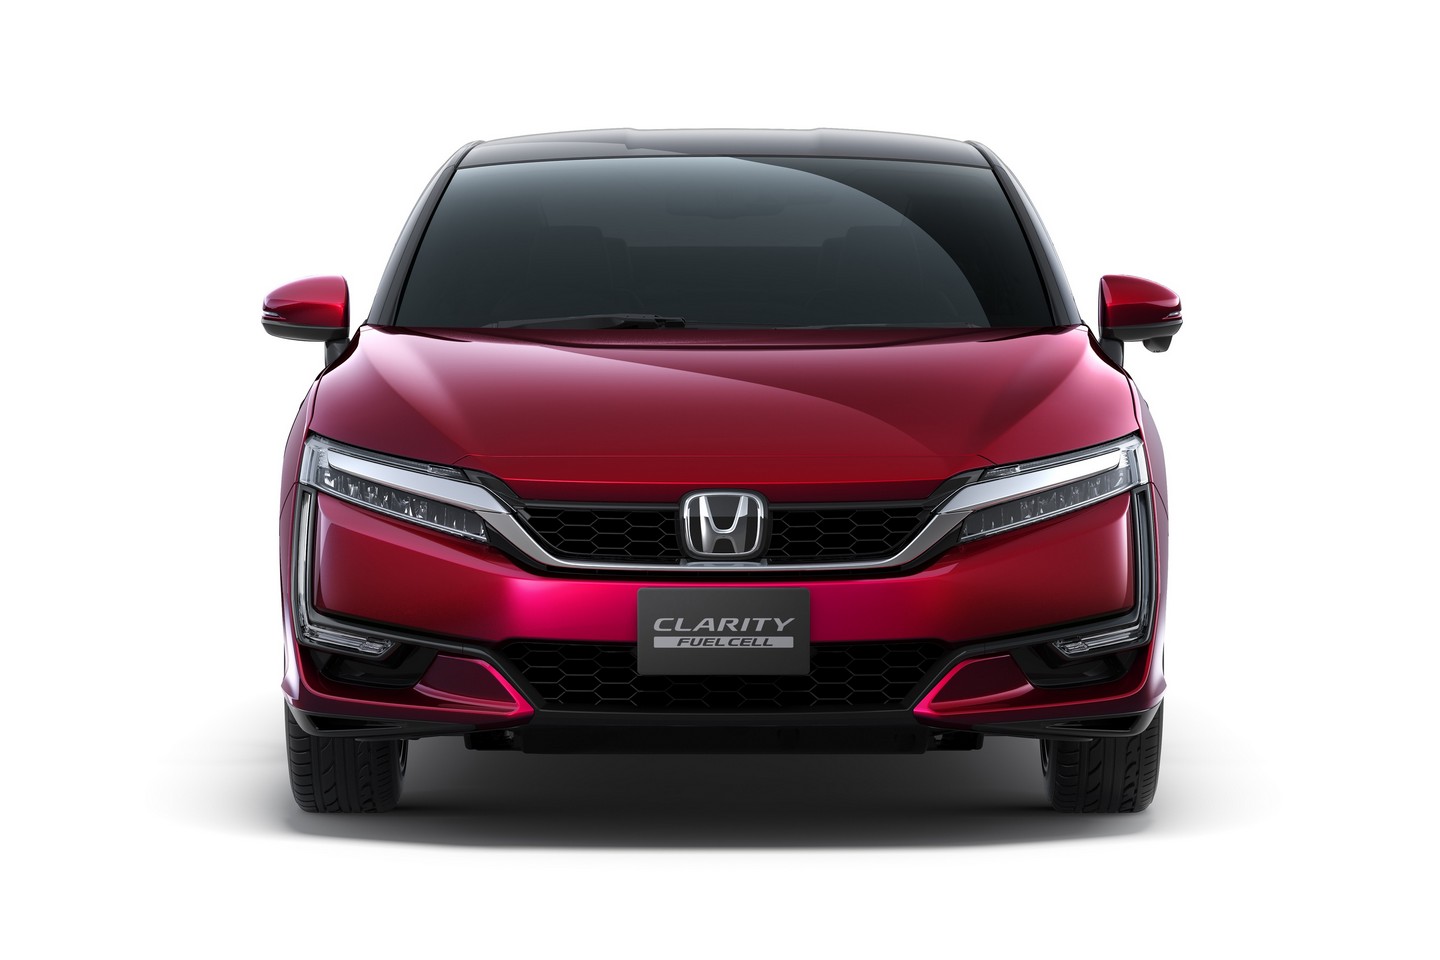  ورود خودروی هیدروژنی هوندا به بازار 